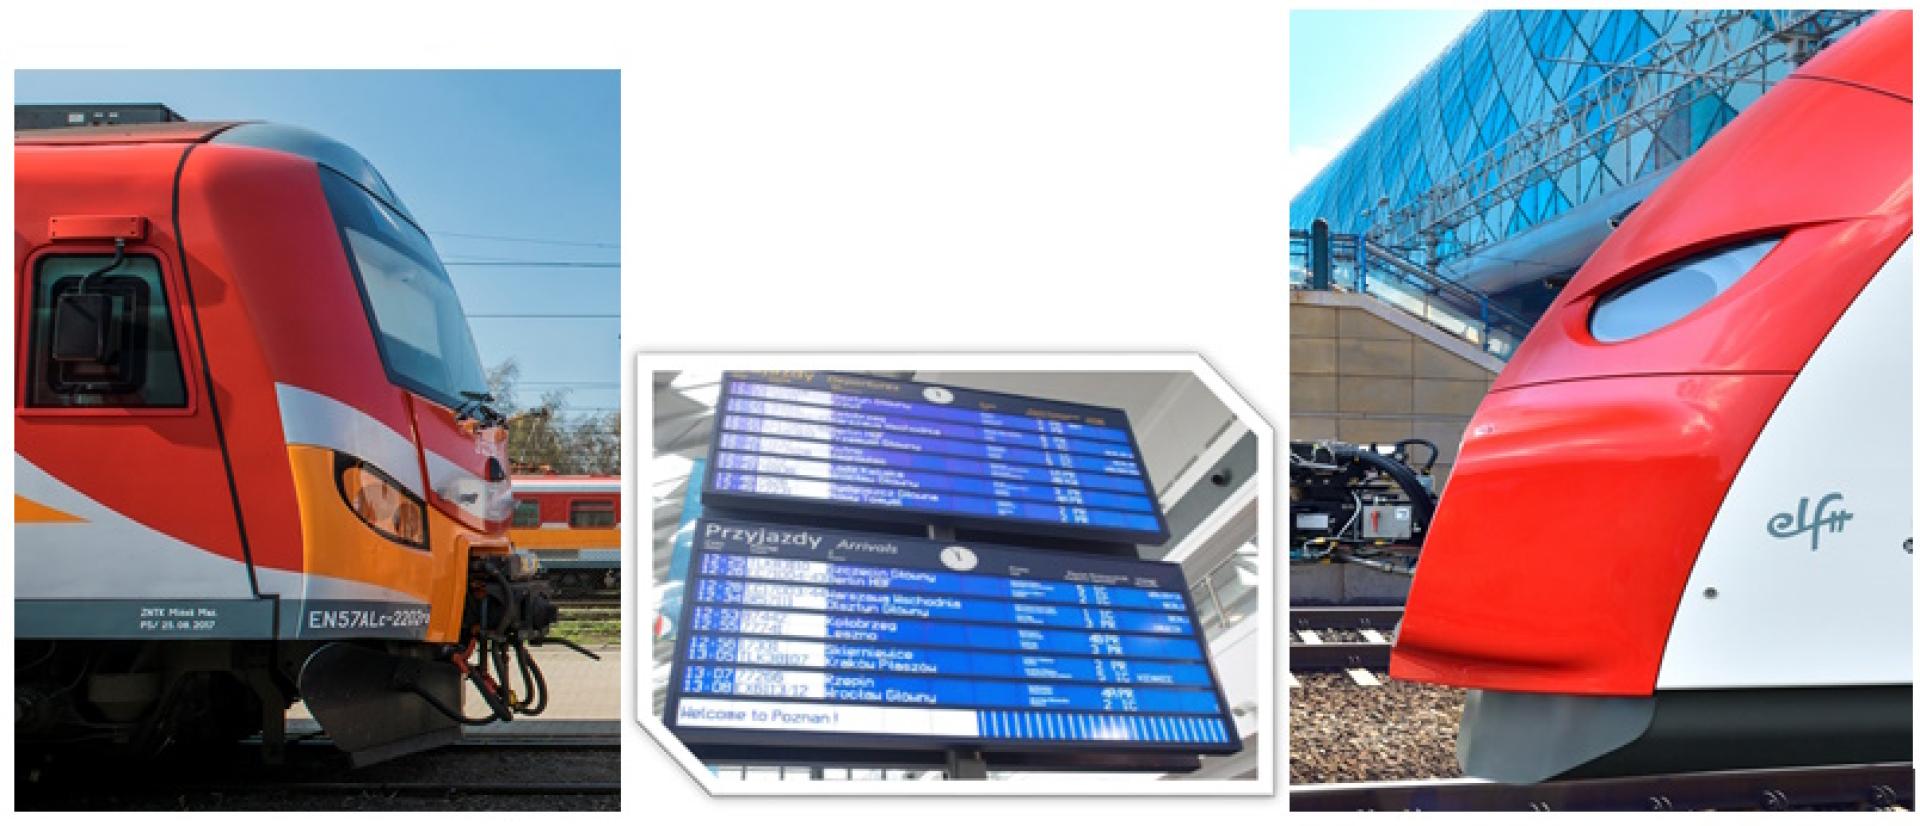 Badanie potrzeb przewozowych w publicznym transporcie zbiorowym do projektu rozkładu jazdy pociągów 2024/2025 - zobacz więcej